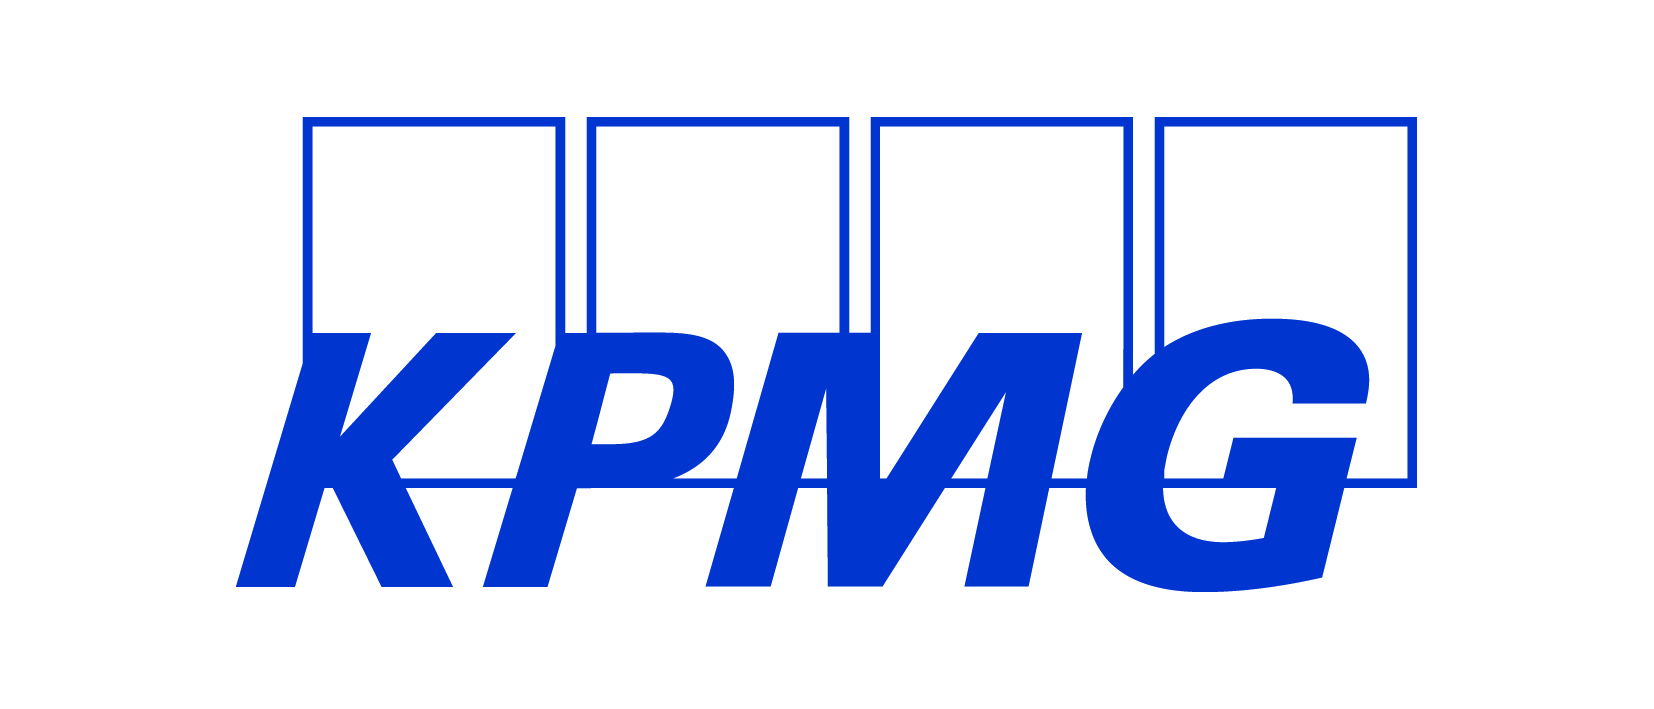 毕马威 logo图片